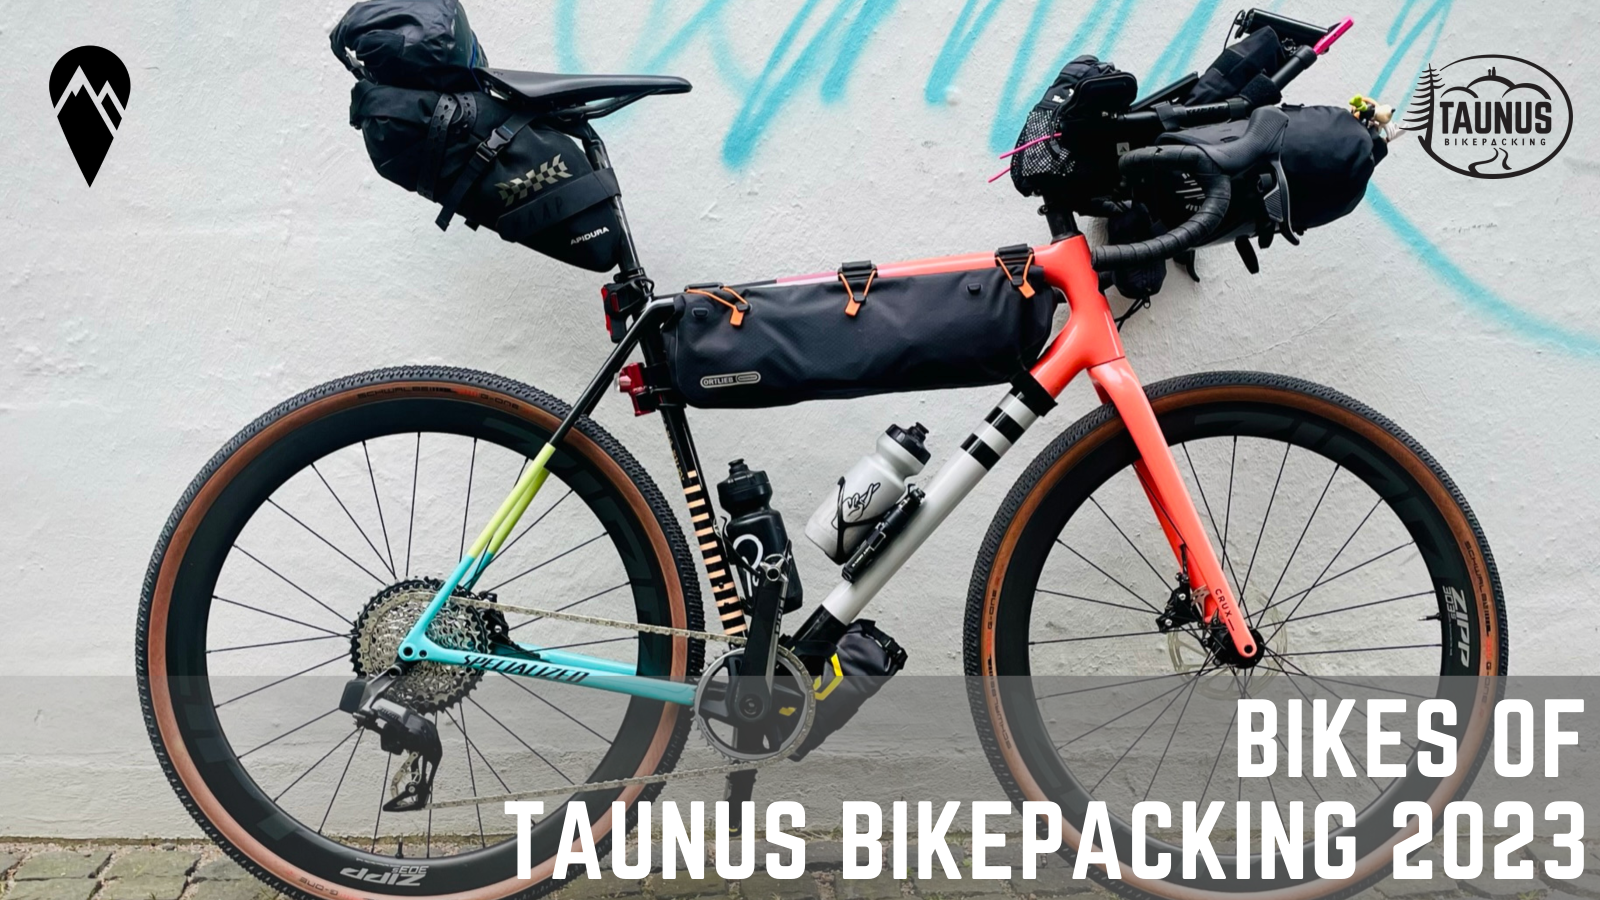 Bikes of Taunus Bikepacking No. 6